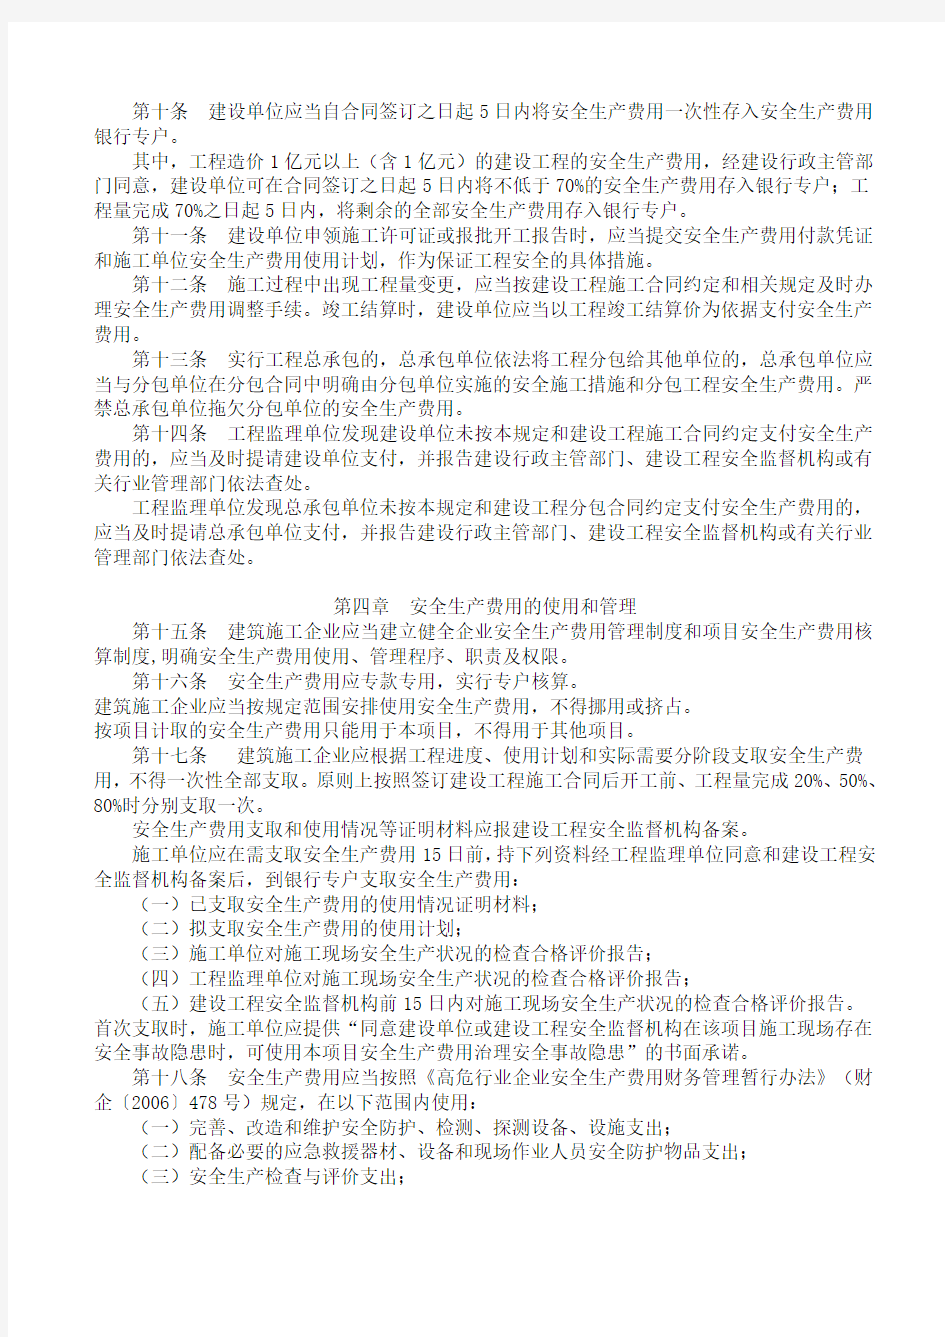 贵州省建设工程安全生产费用监督管理暂行规定(最新)